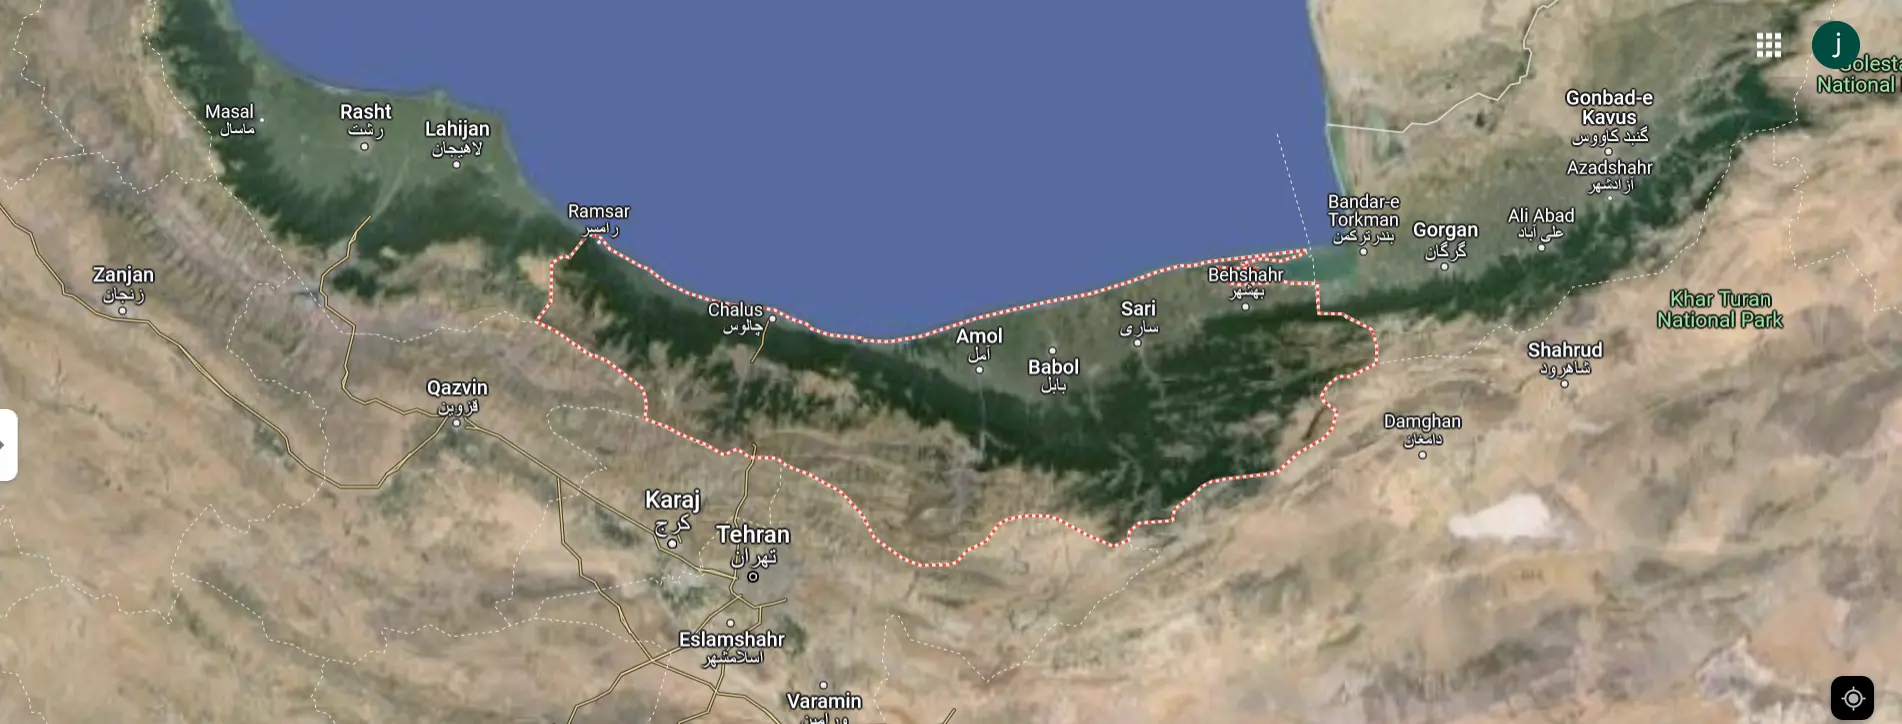 آدرس دقیق استان مازندران روی نقشه 26215641